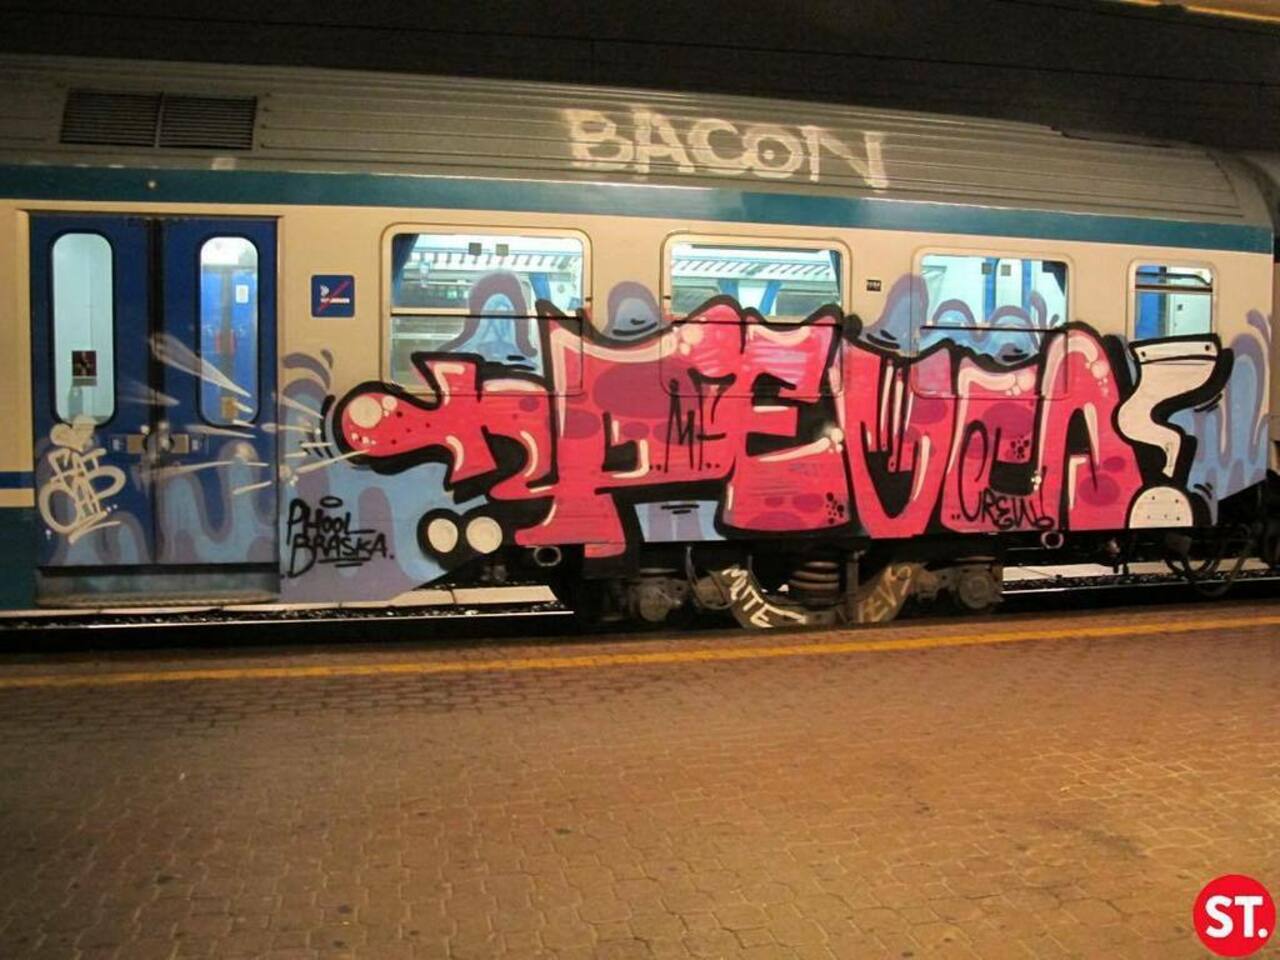 RT @artpushr: via #spraytrains "http://ift.tt/1FvLSGS" #graffiti #streetart http://t.co/95We4ThB6Y